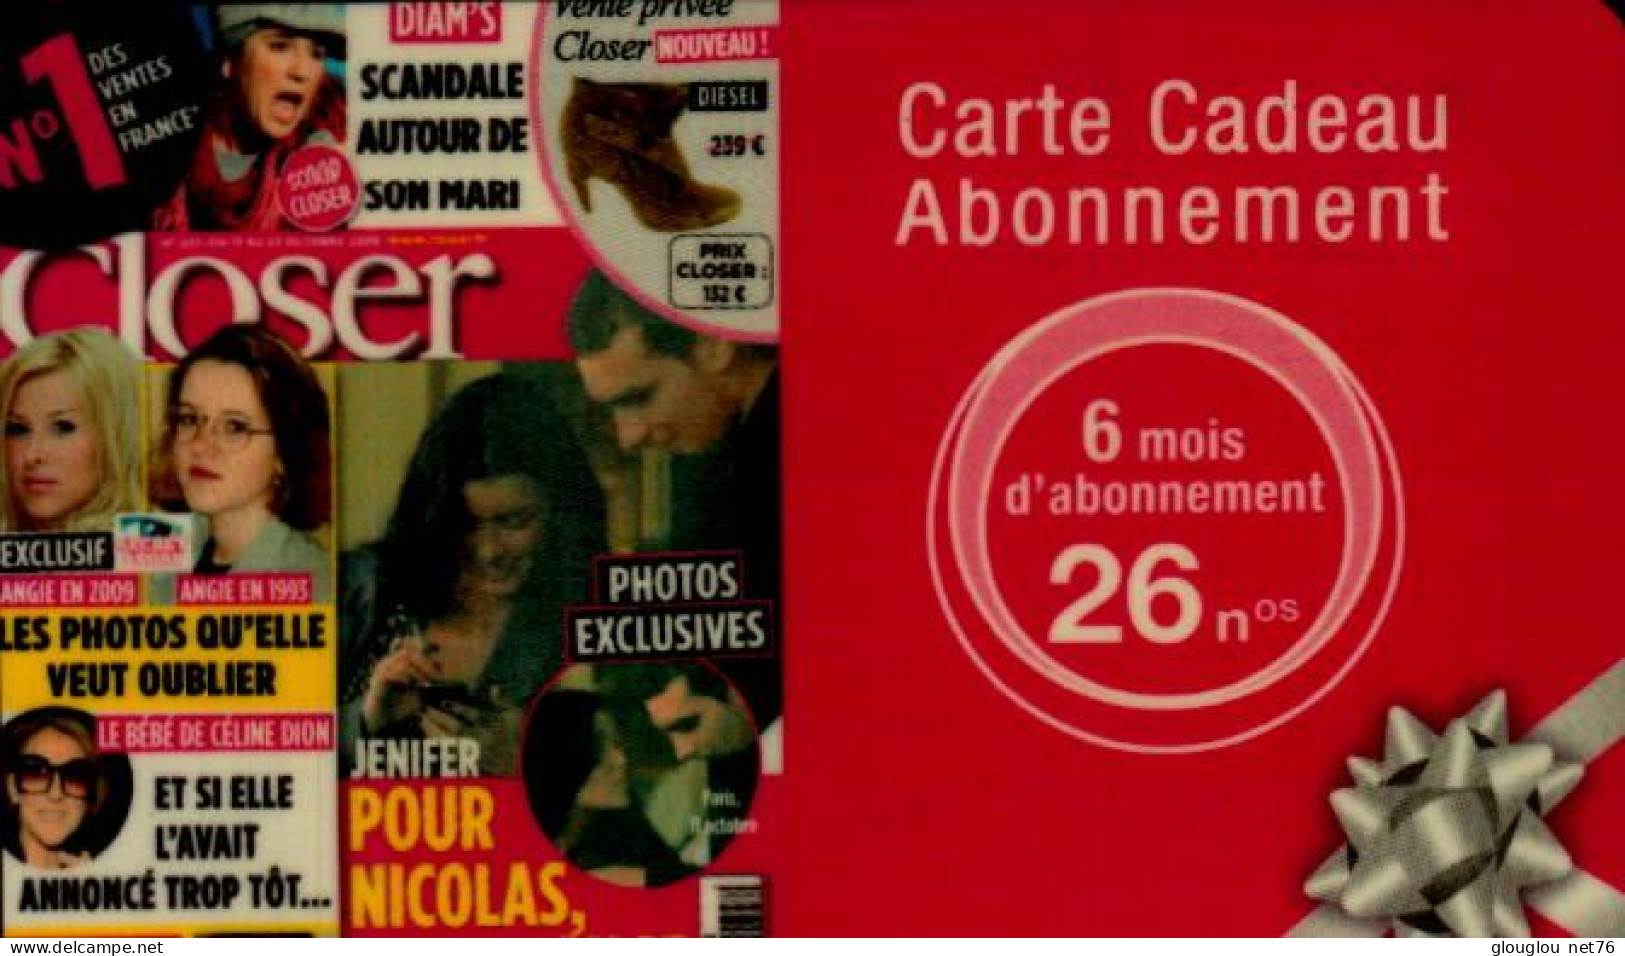 CARTE CADEAU ABONNEMENT 6 MOIS  26 No    CLOSER - Cartes De Fidélité Et Cadeau